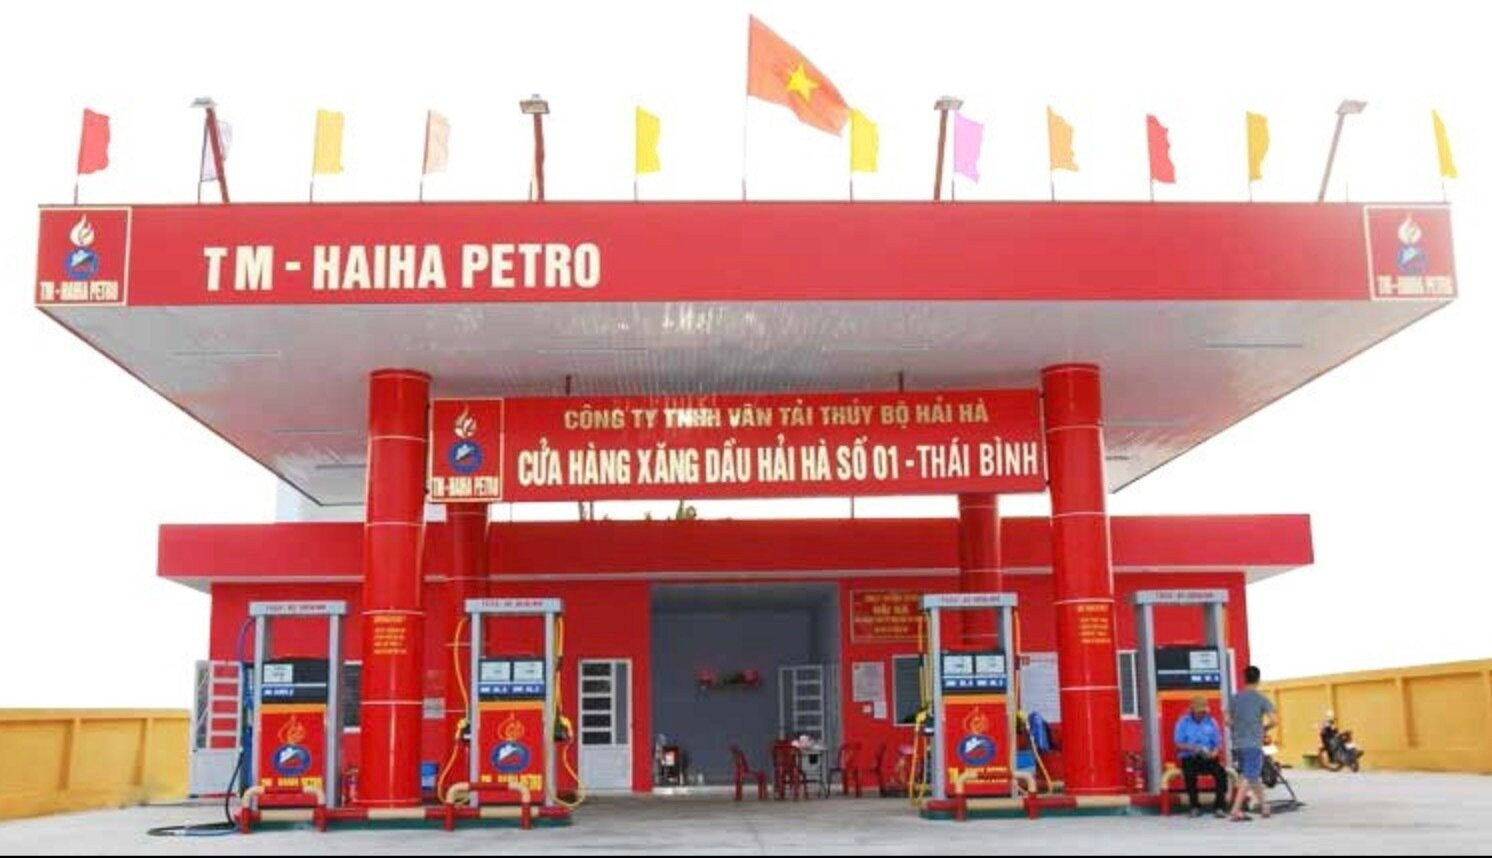 Cửa hàng xăng dầu của HaiHai Petro tại Thái Bình. (Ảnh: HaiHa Petro).